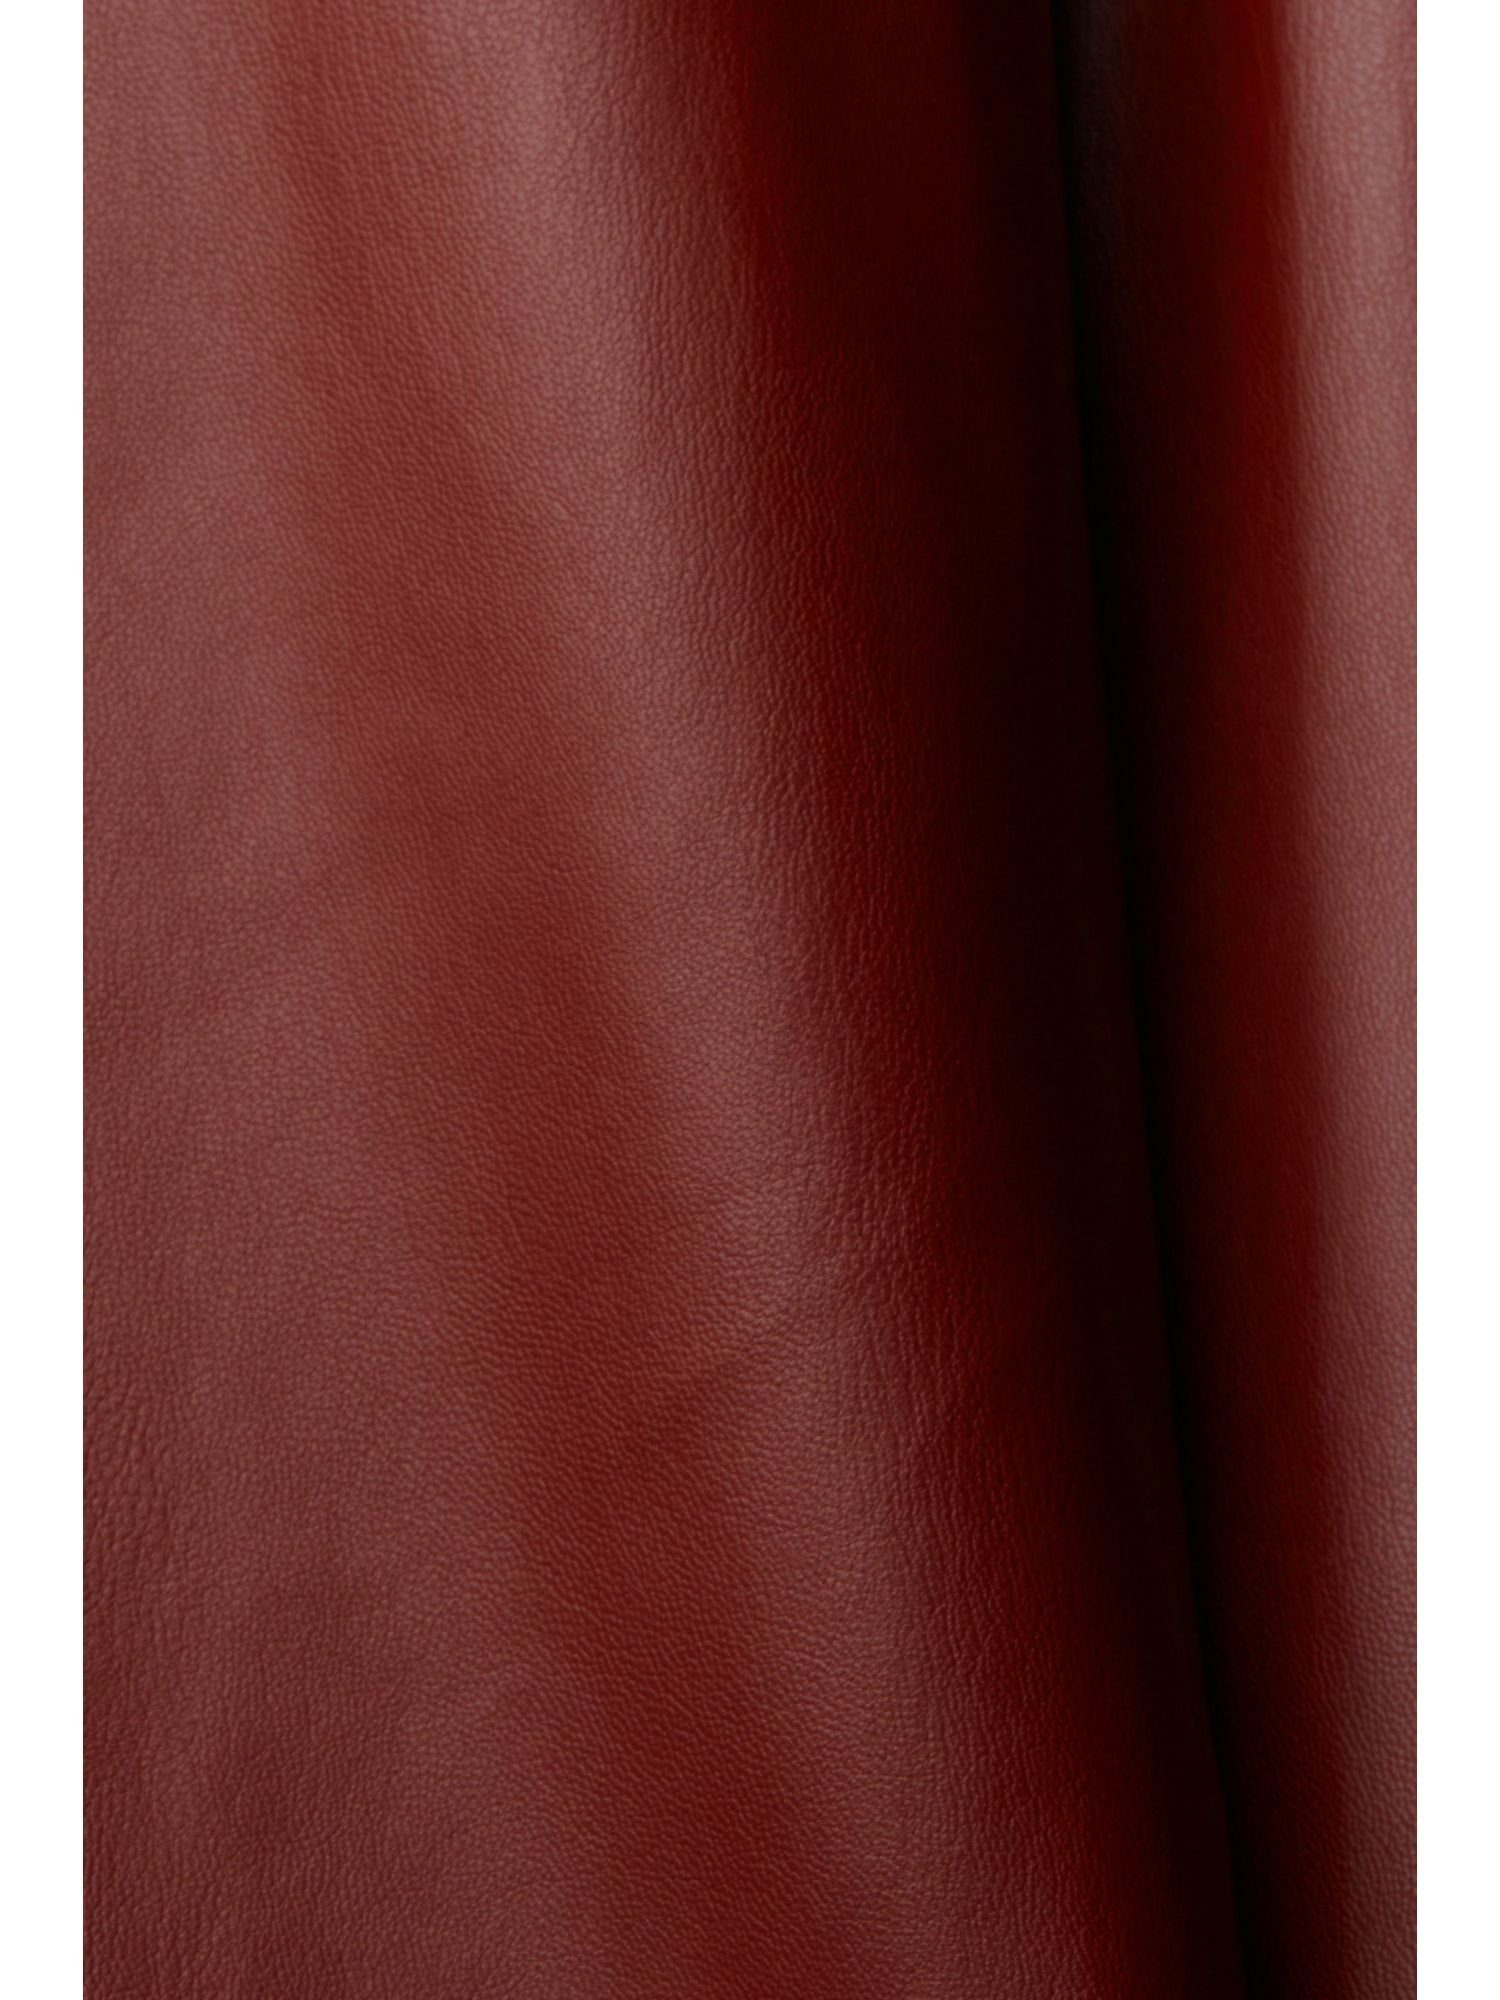 Esprit Collection in Cropped-Hose Lederoptik 7/8-Hose RED BORDEAUX